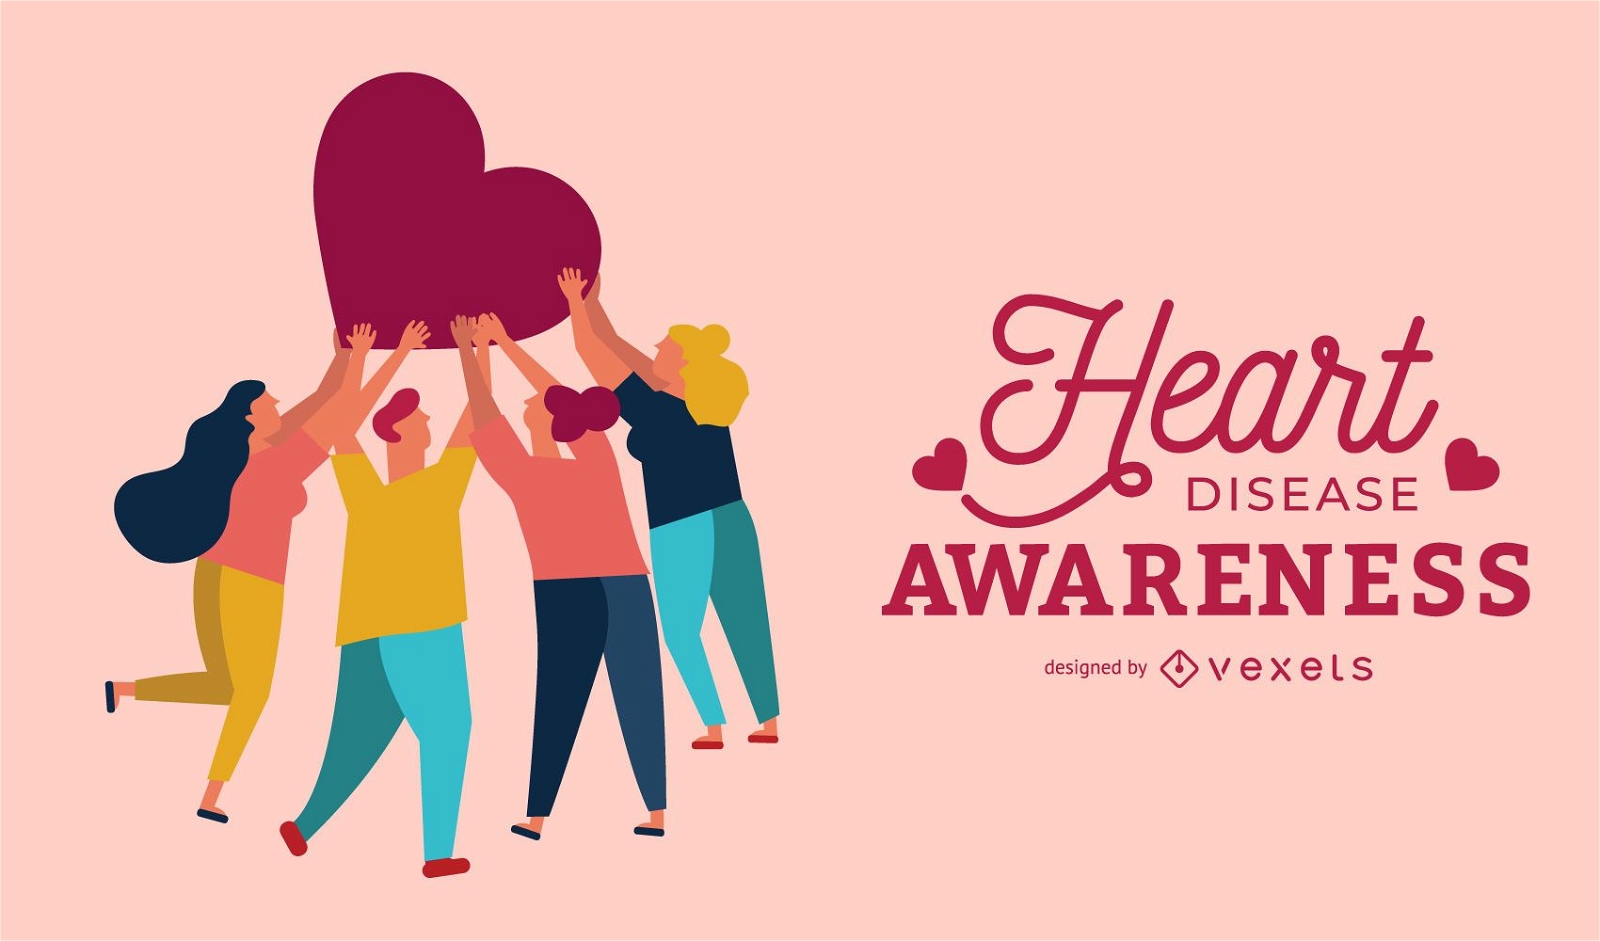 Heart disease awareness poster design